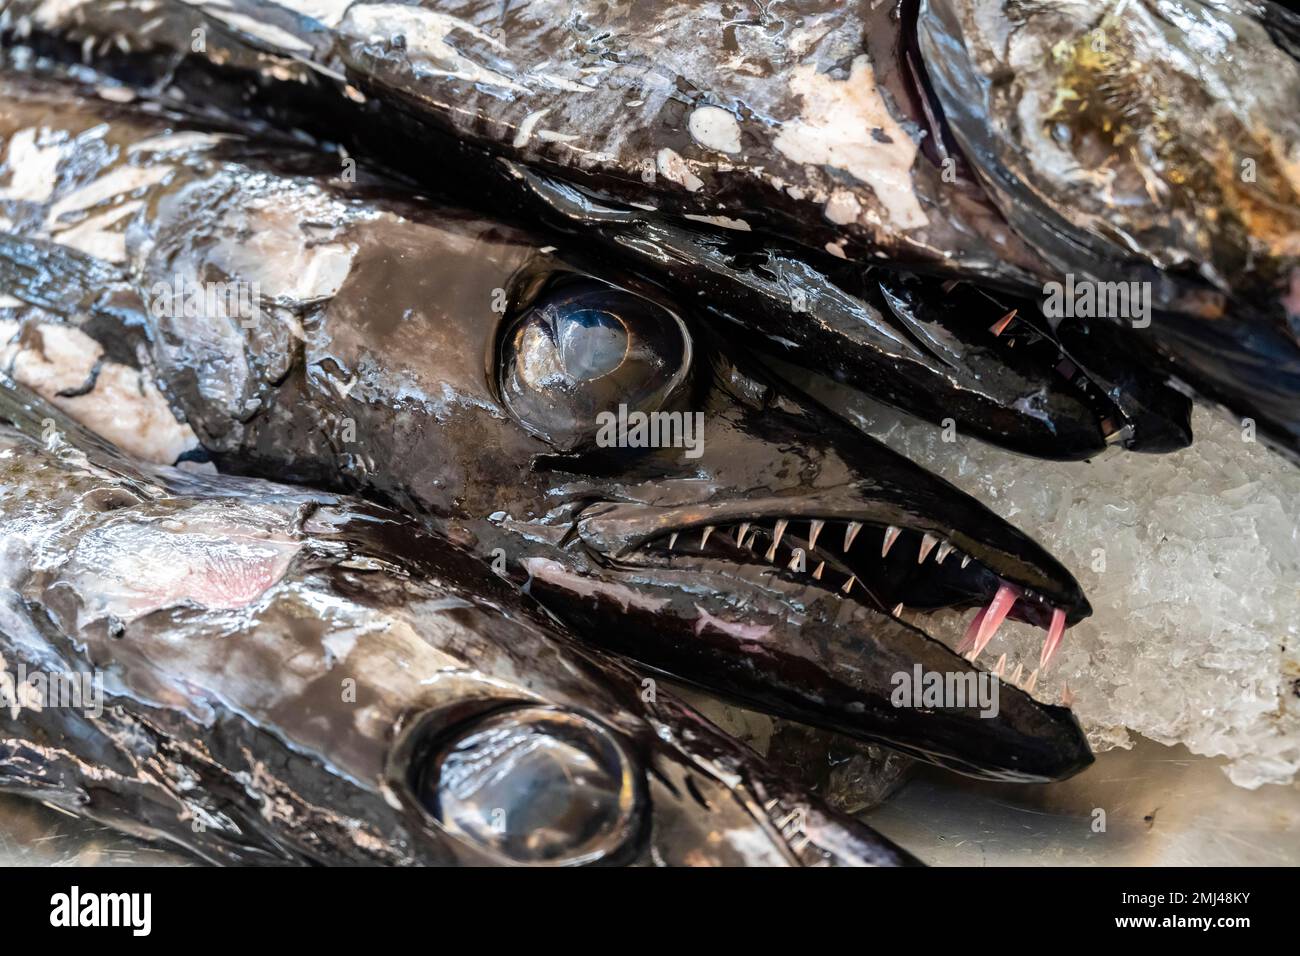 Edible fish, scabbardfish Espada, Mercado dos Lavradores, Funchal, Madeira, Portugal Stock Photo